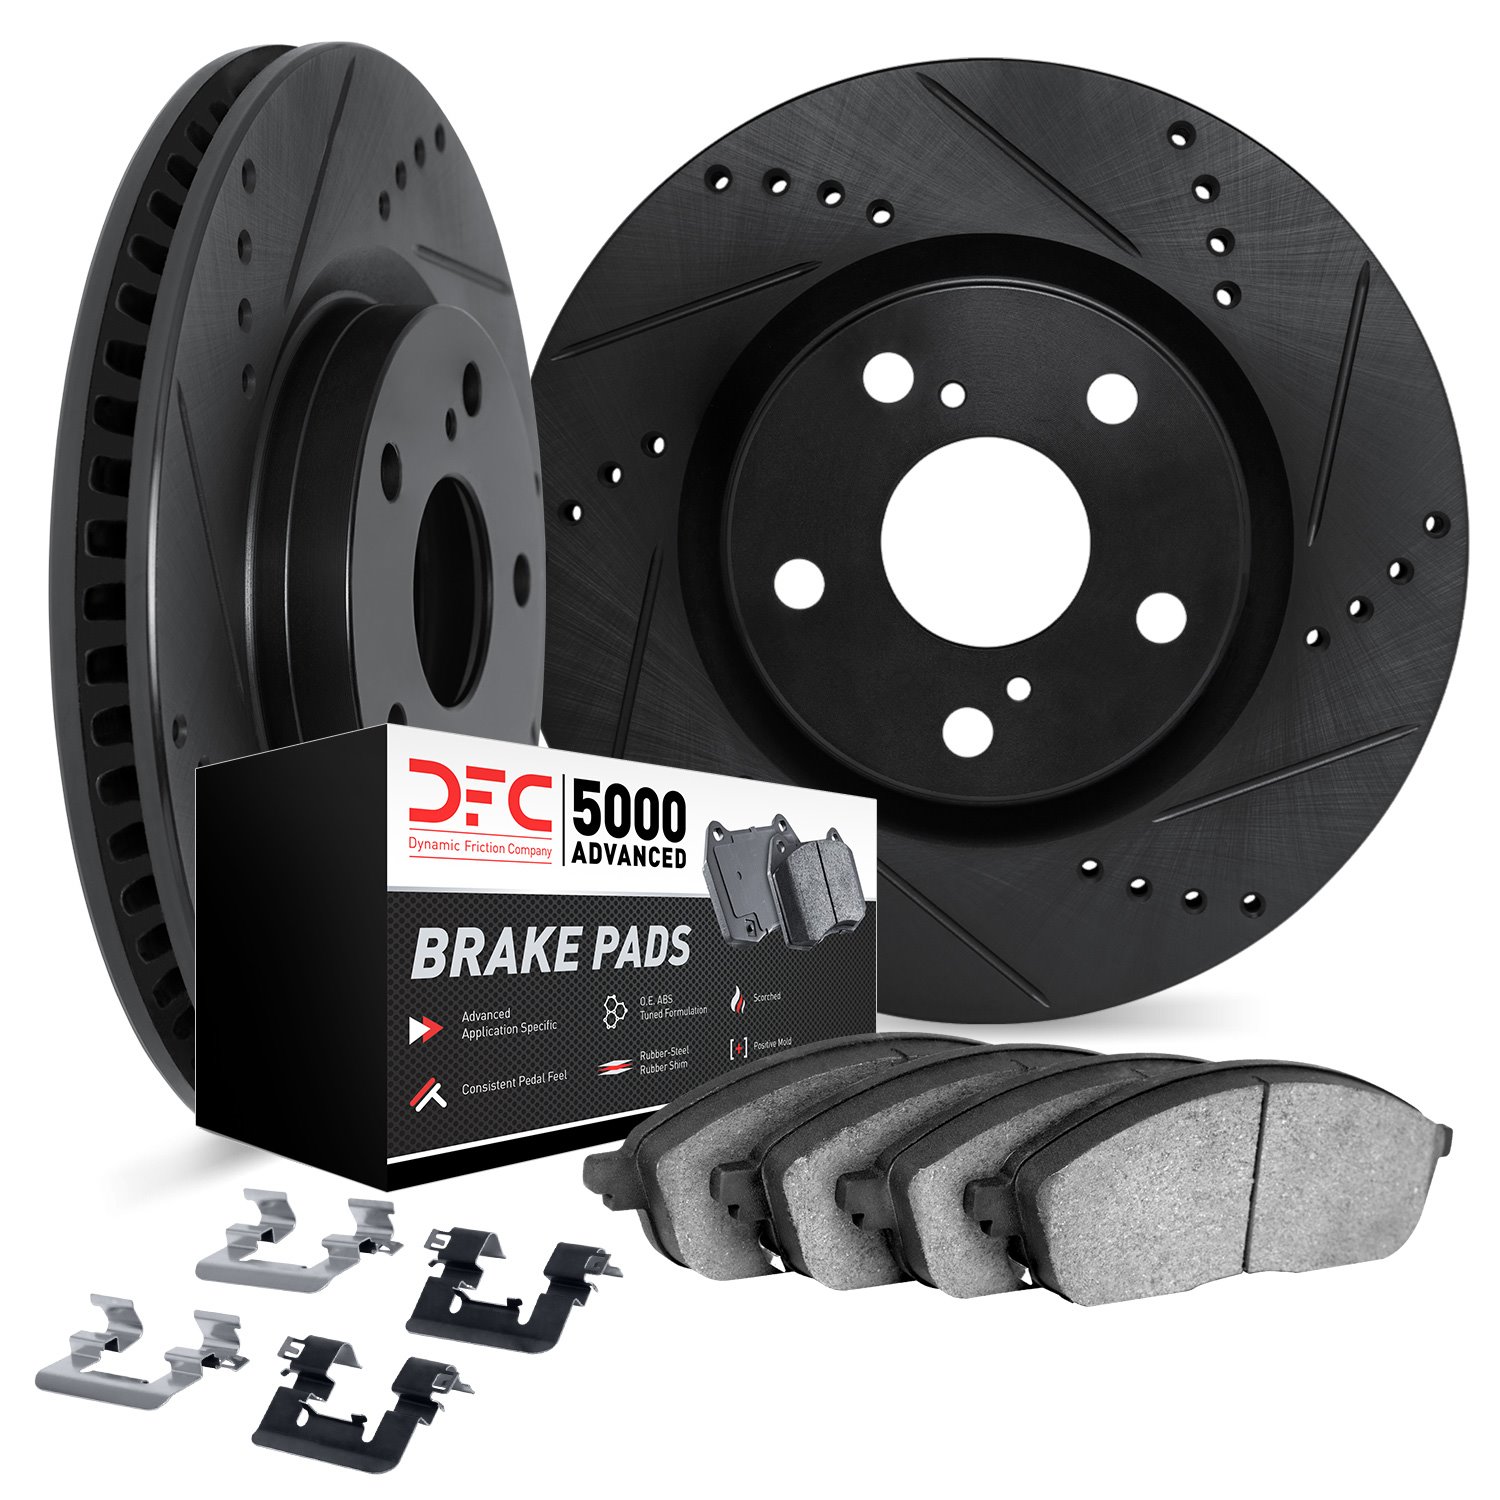 8512-39086 Drilled/Slotted Brake Rotors w/5000 Advanced Brake Pads Kit & Hardware [Black], 2003-2009 Mopar, Position: Front